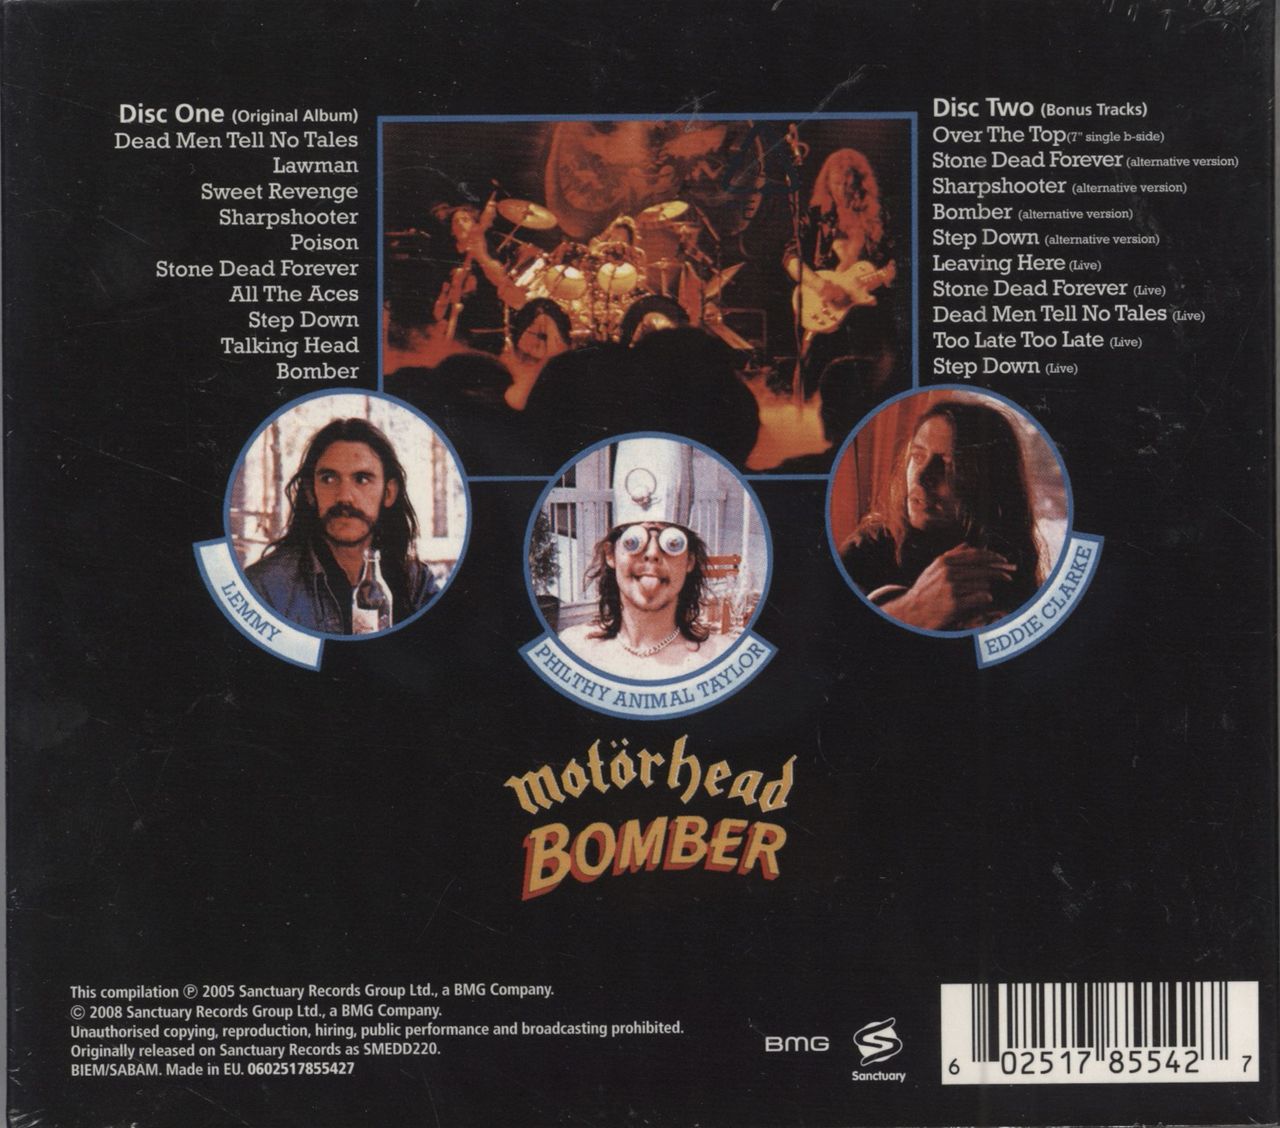 Motorhead Bomber - Deluxe Edition UK 2 CD album set (Double CD) MOT2CBO787468